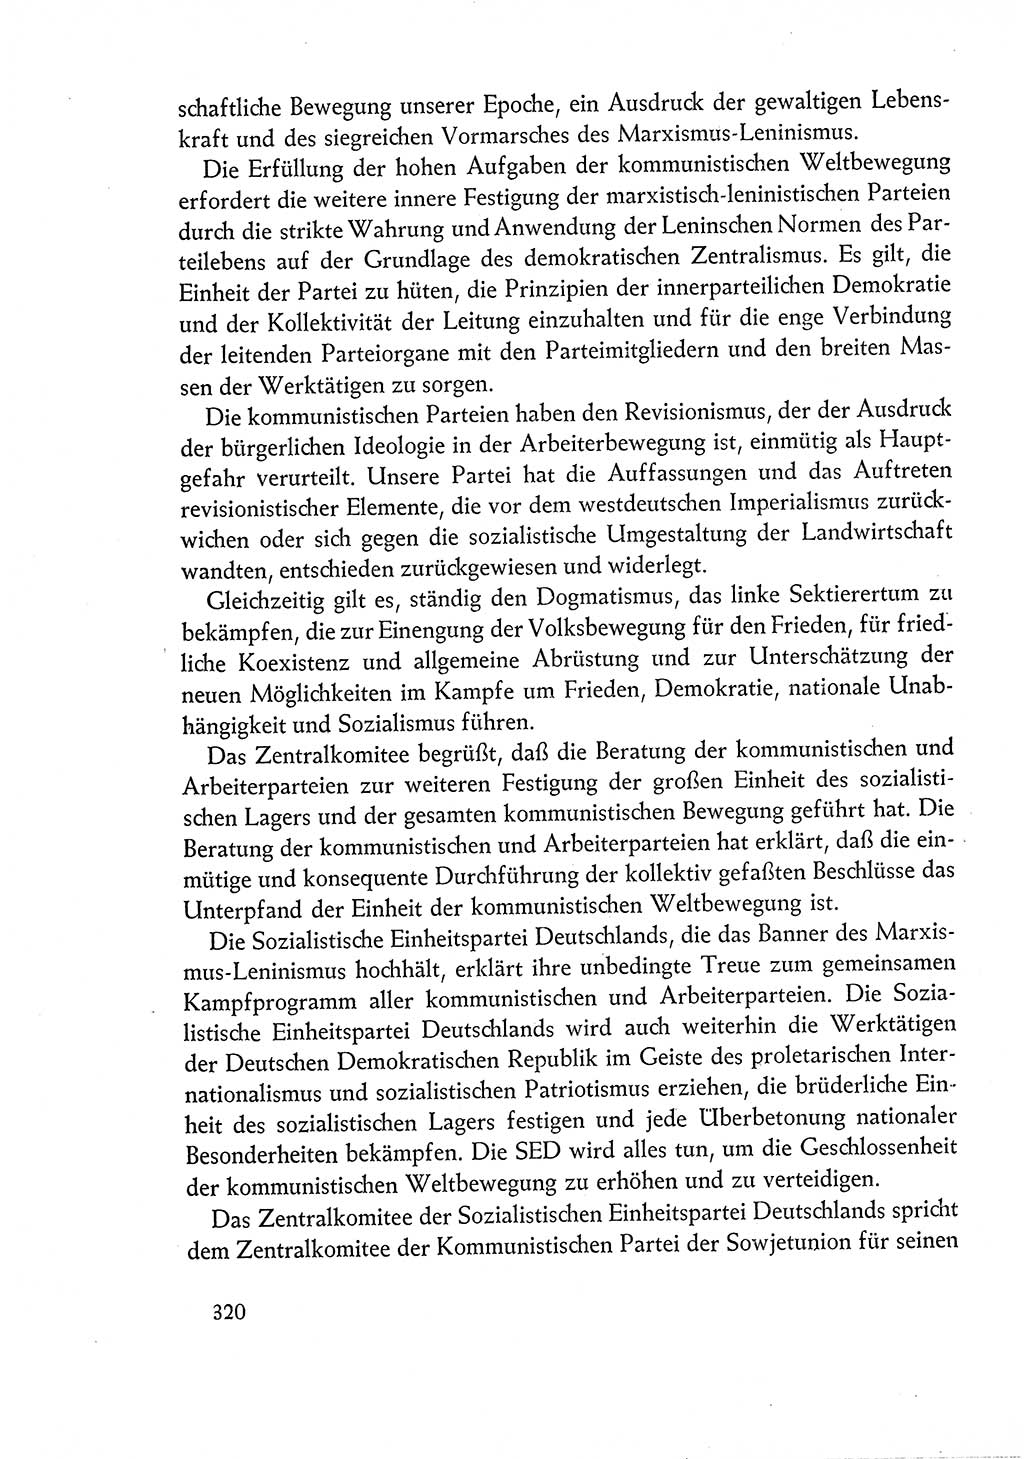 Dokumente der Sozialistischen Einheitspartei Deutschlands (SED) [Deutsche Demokratische Republik (DDR)] 1960-1961, Seite 320 (Dok. SED DDR 1960-1961, S. 320)